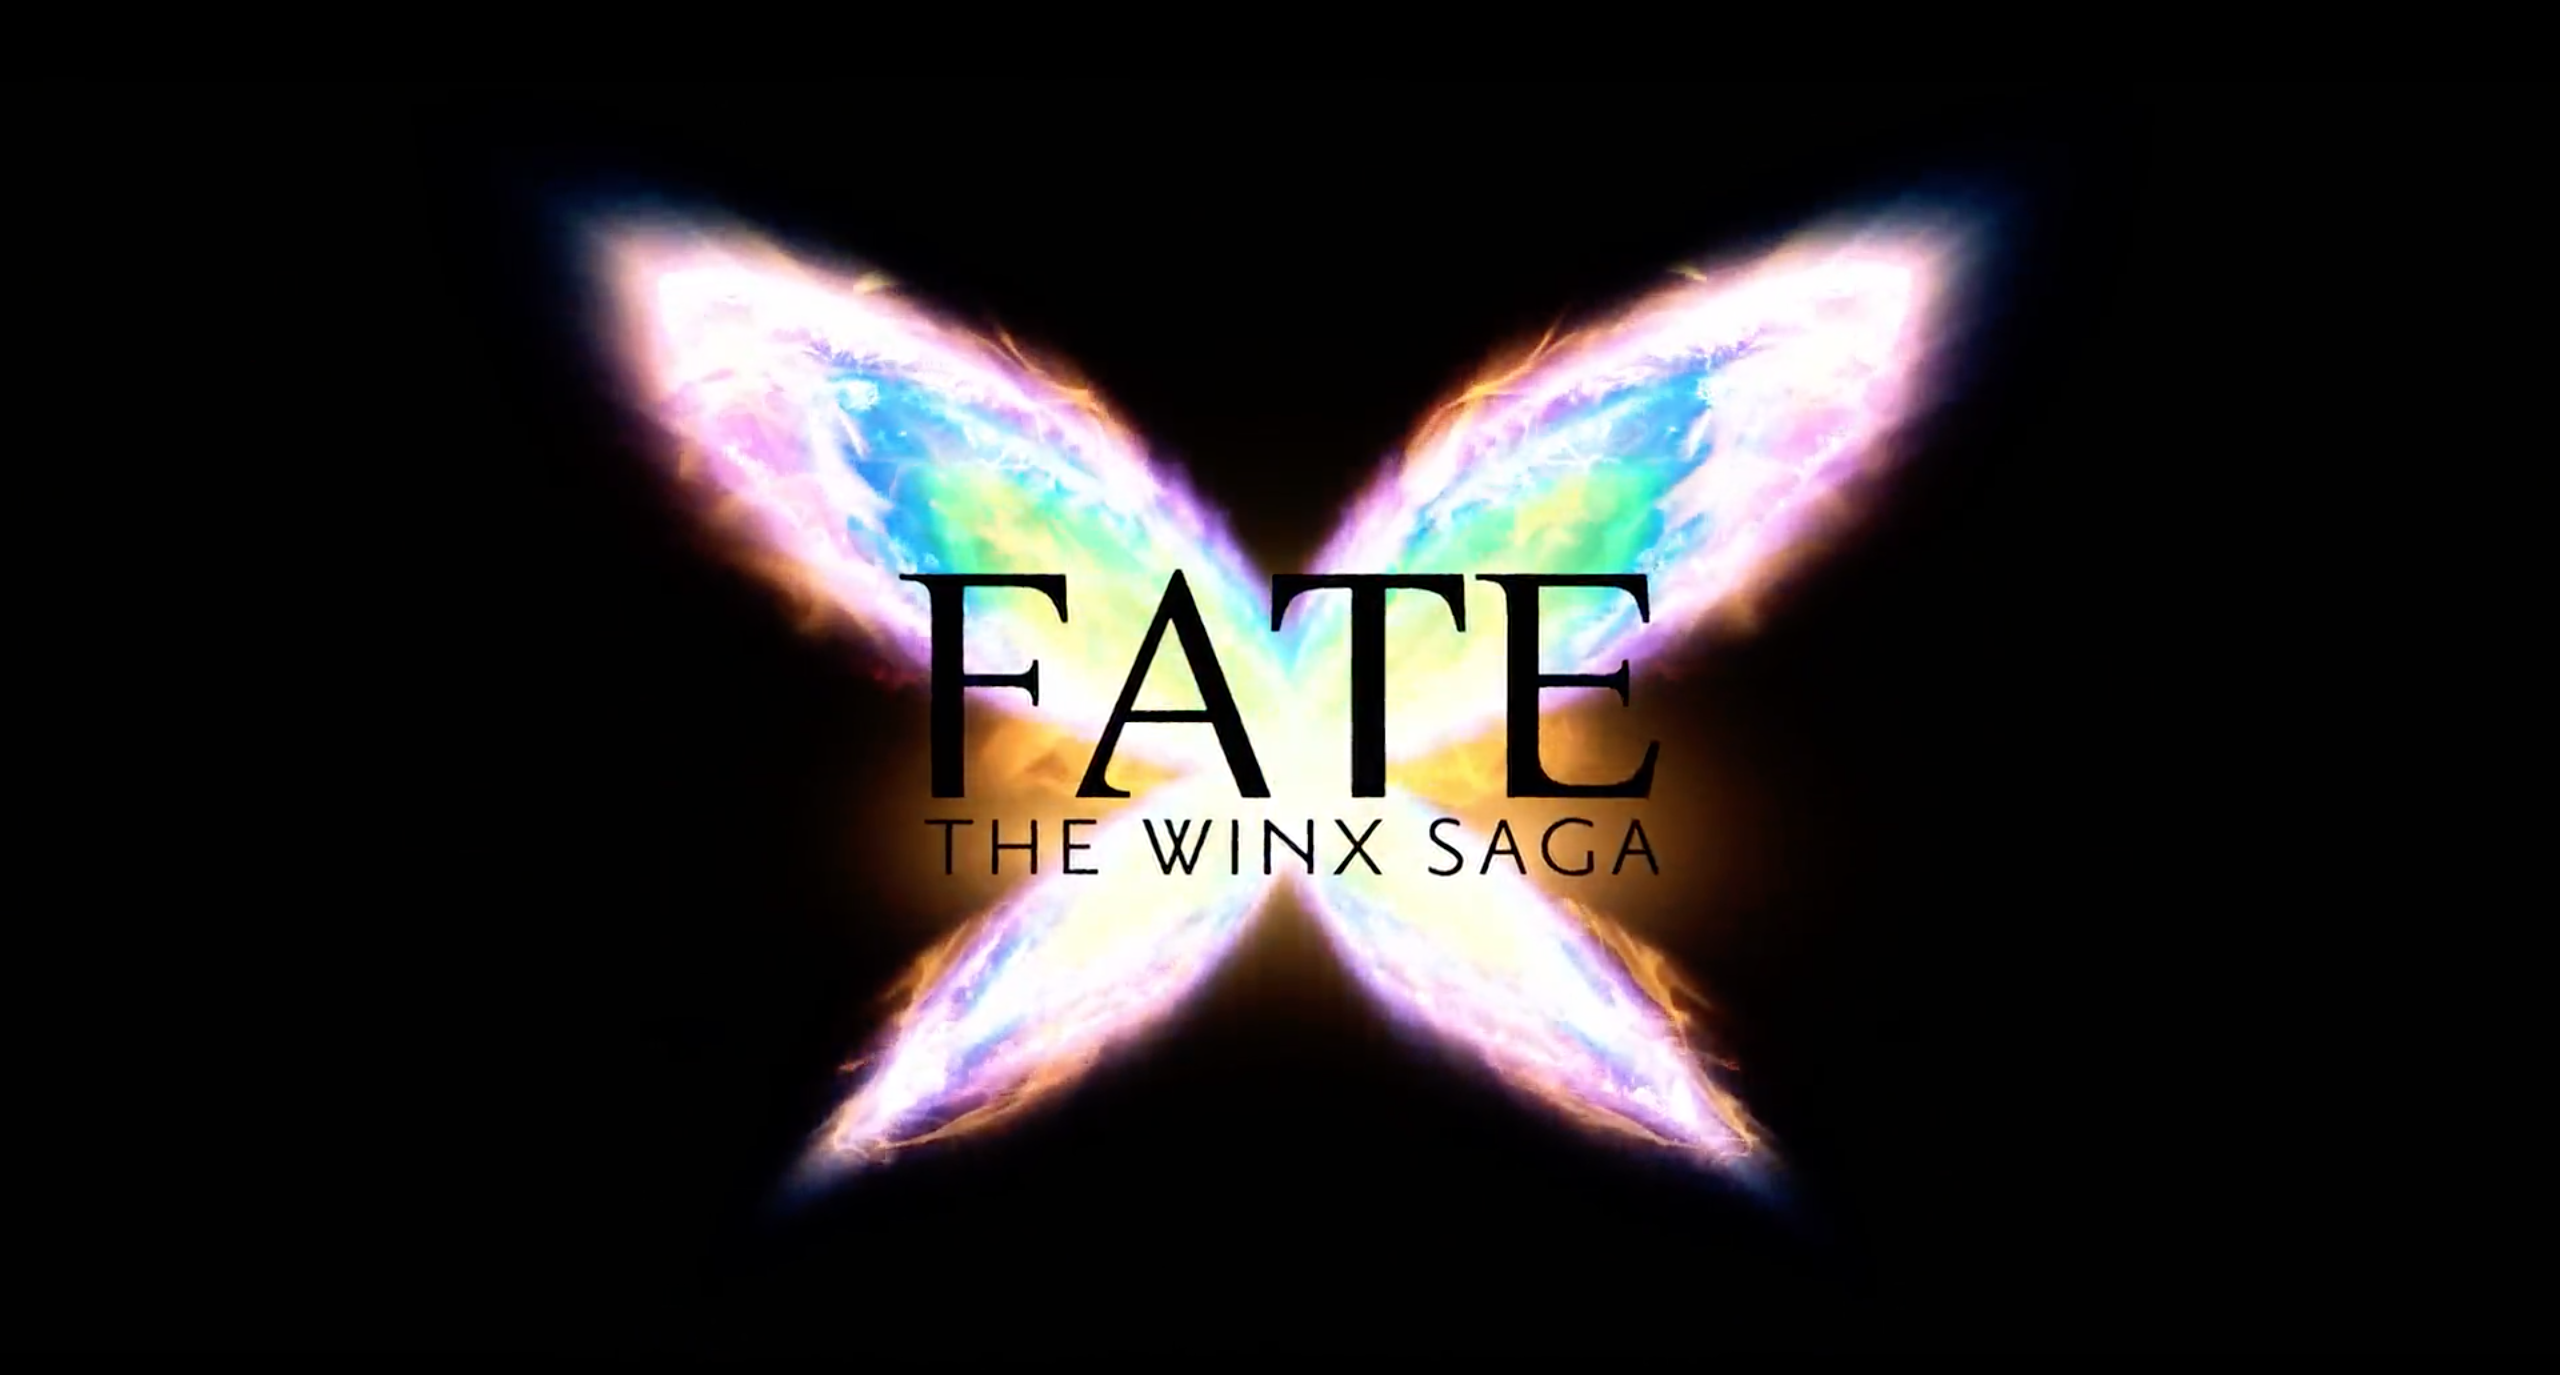 Fate - The Winx Saga : La recensione della prima stagione